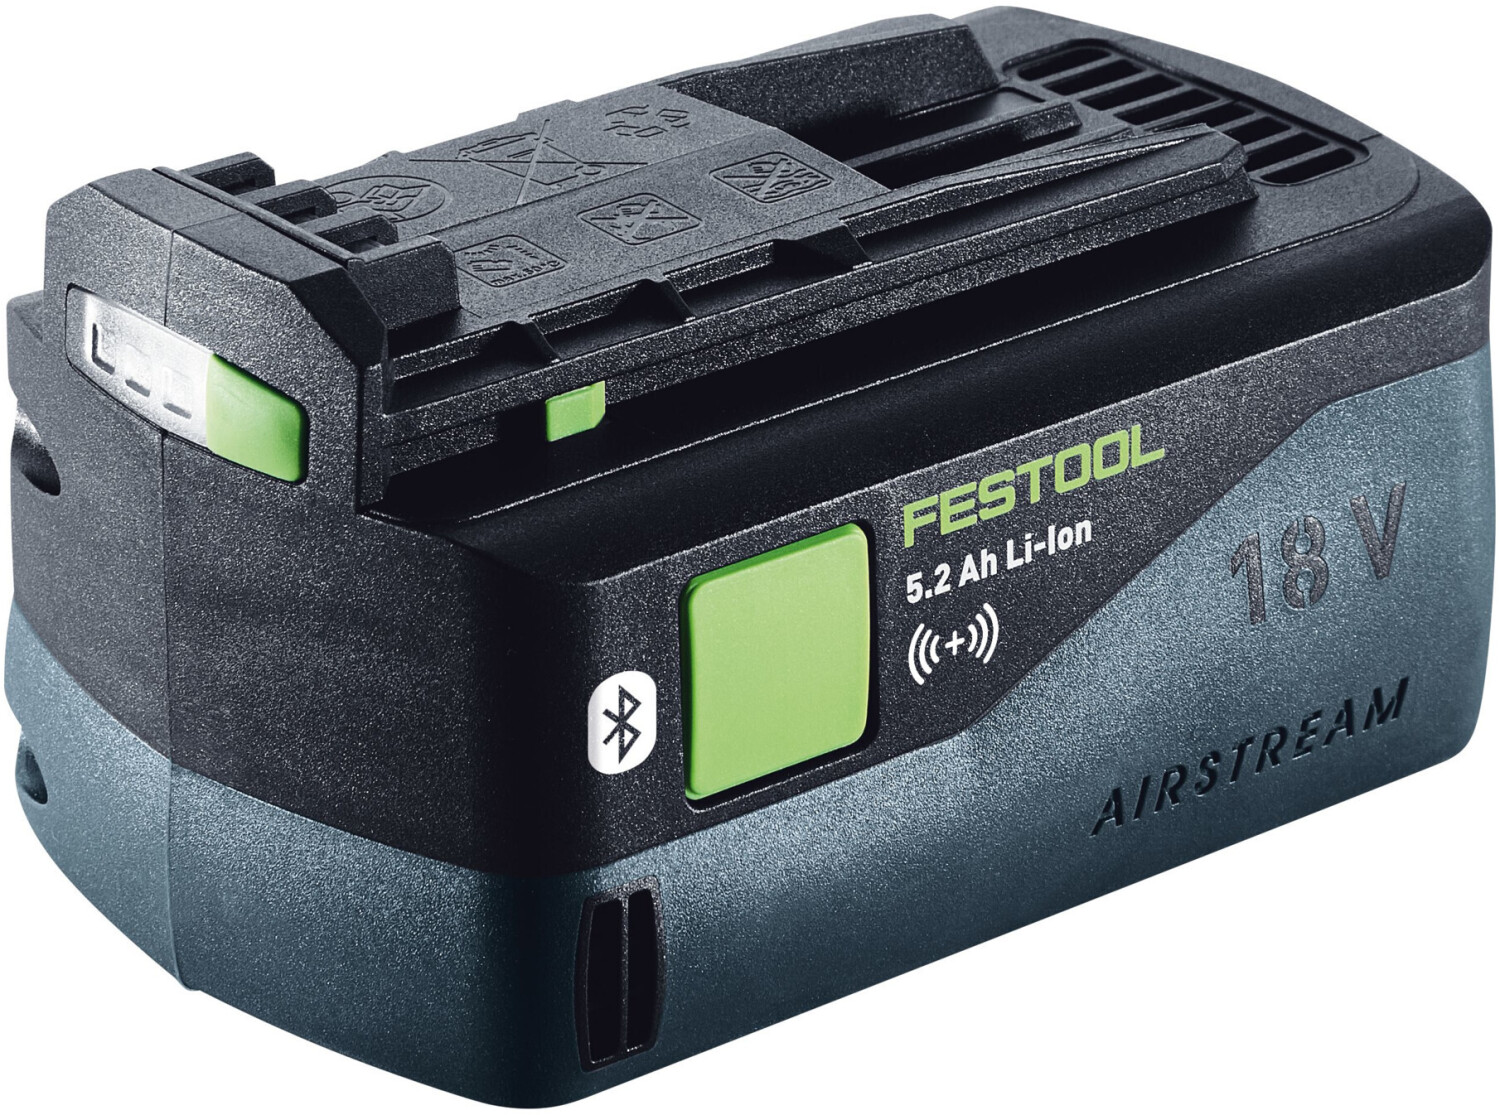 Photos - Power Tool Battery Festool Akkupack 18 Li 5,2 ASI  (202479)